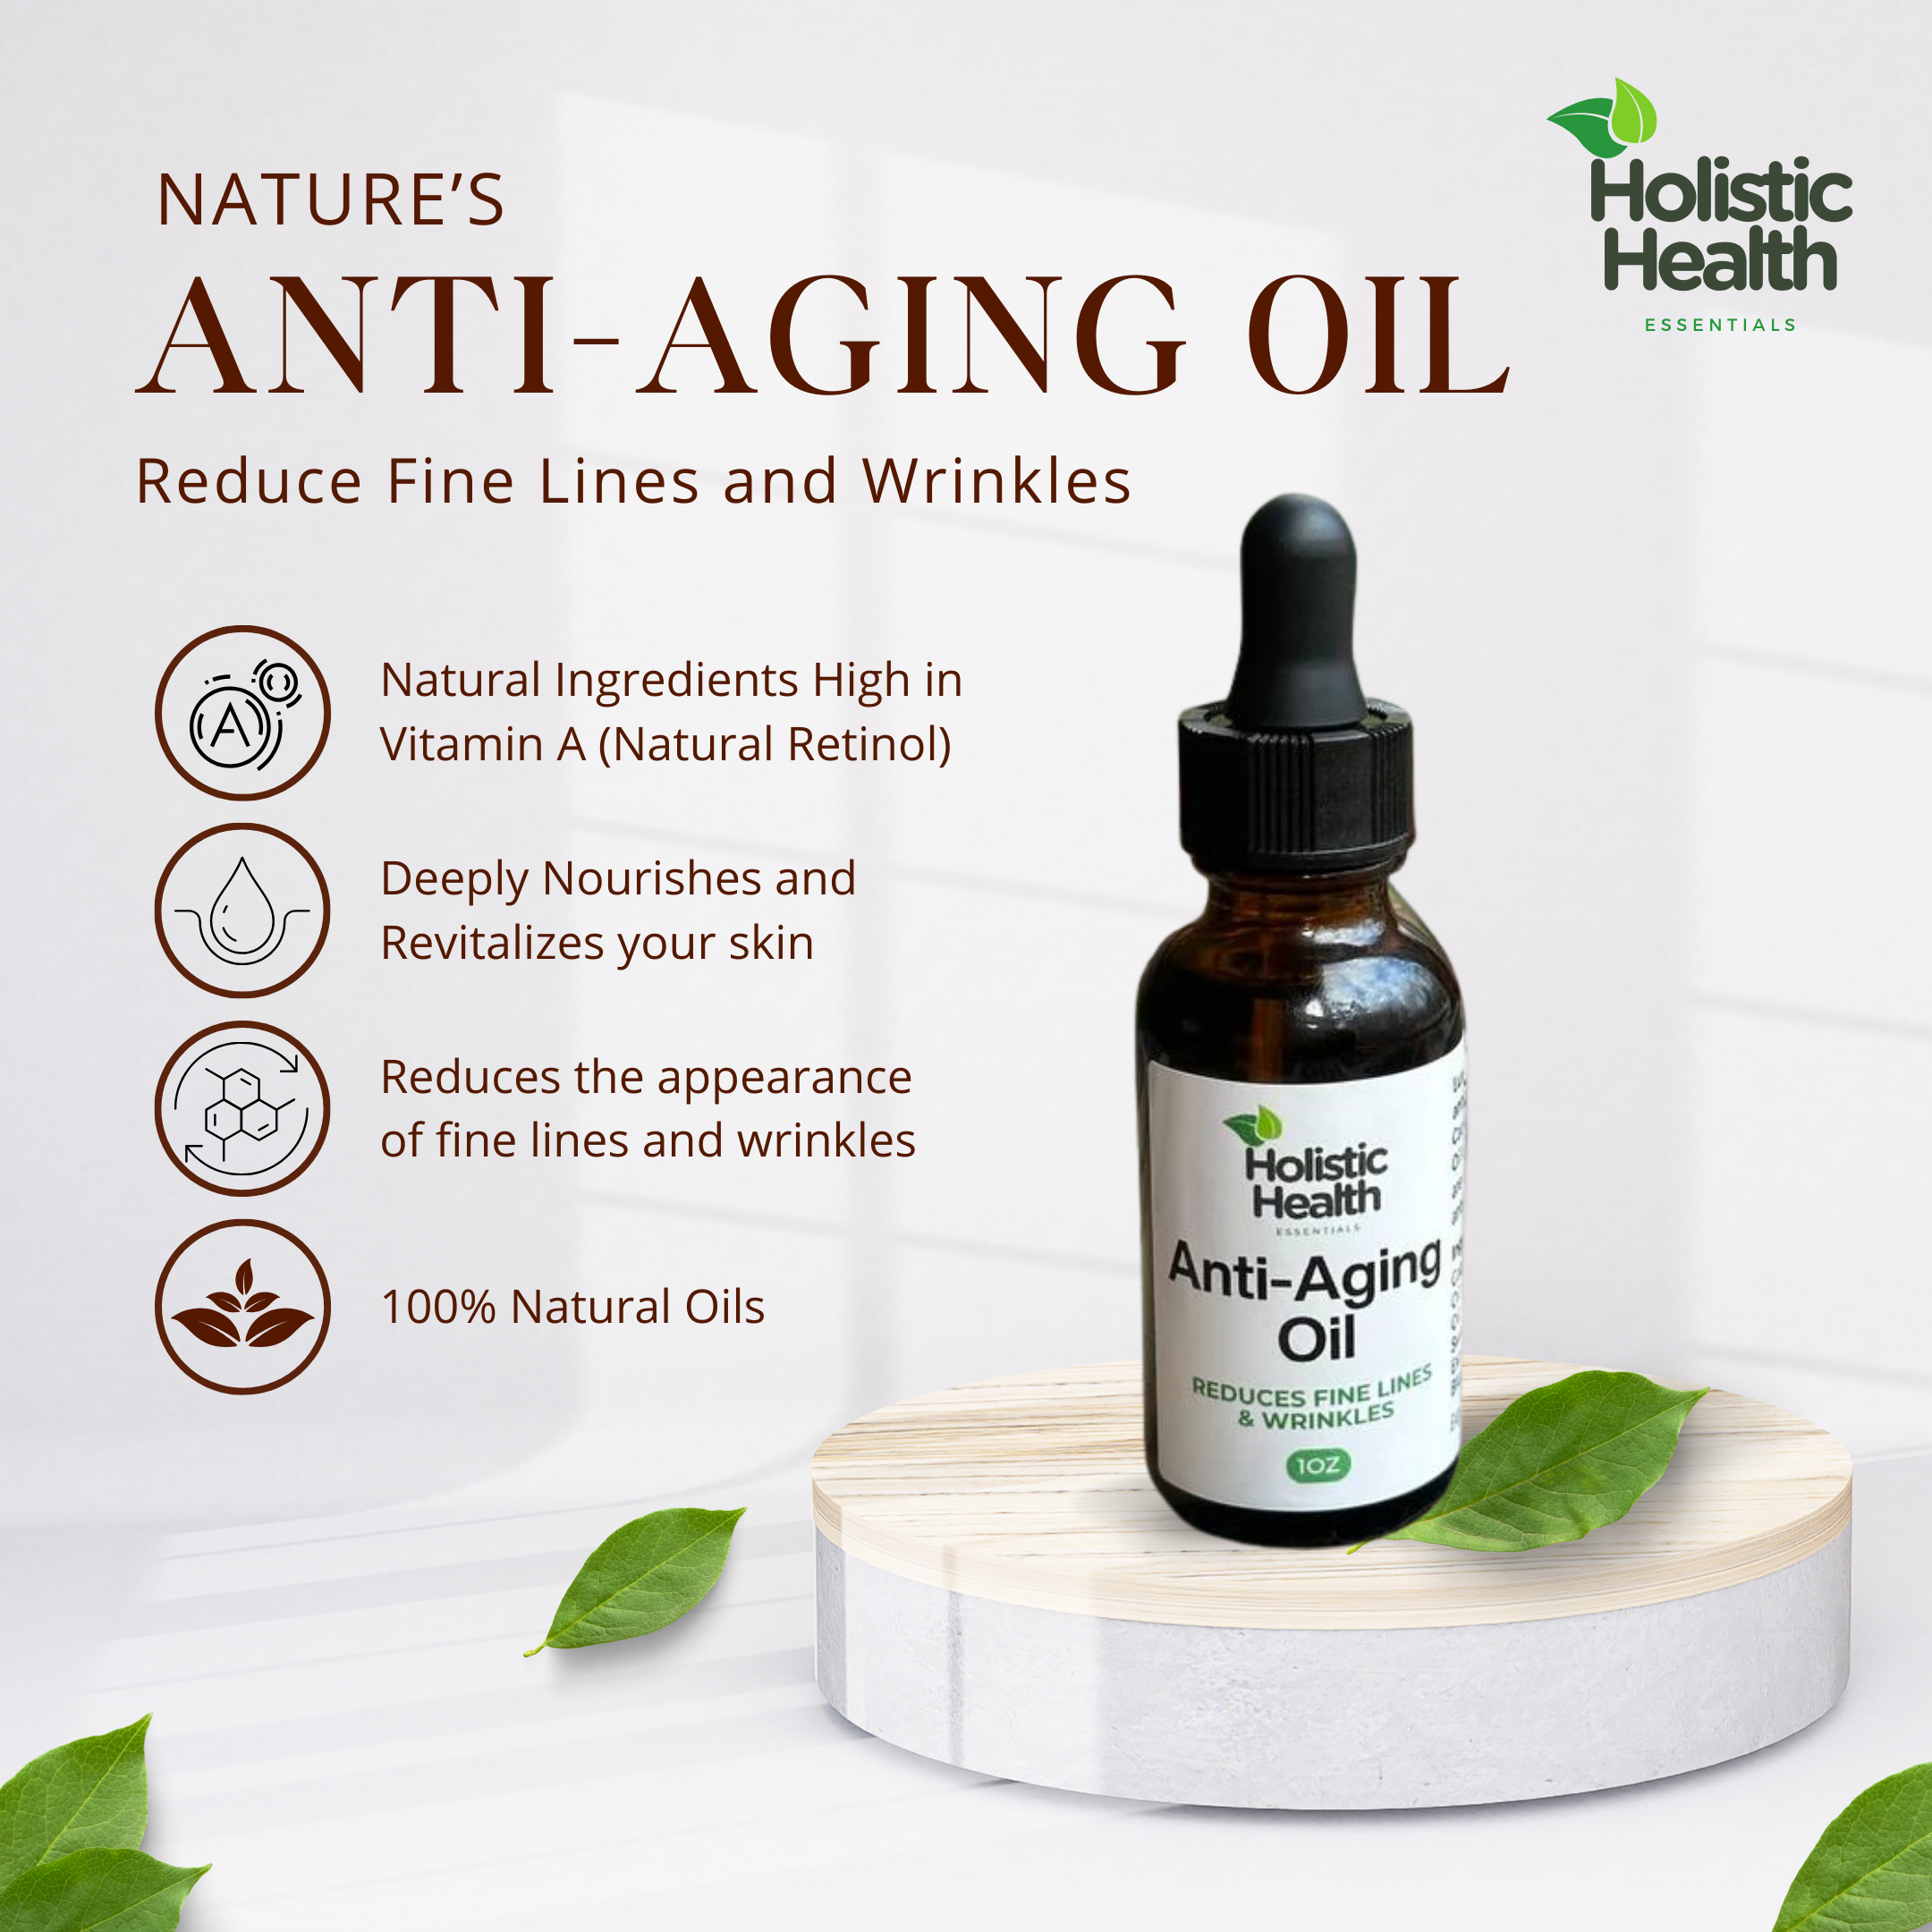 Natural Anti-Aging Oil